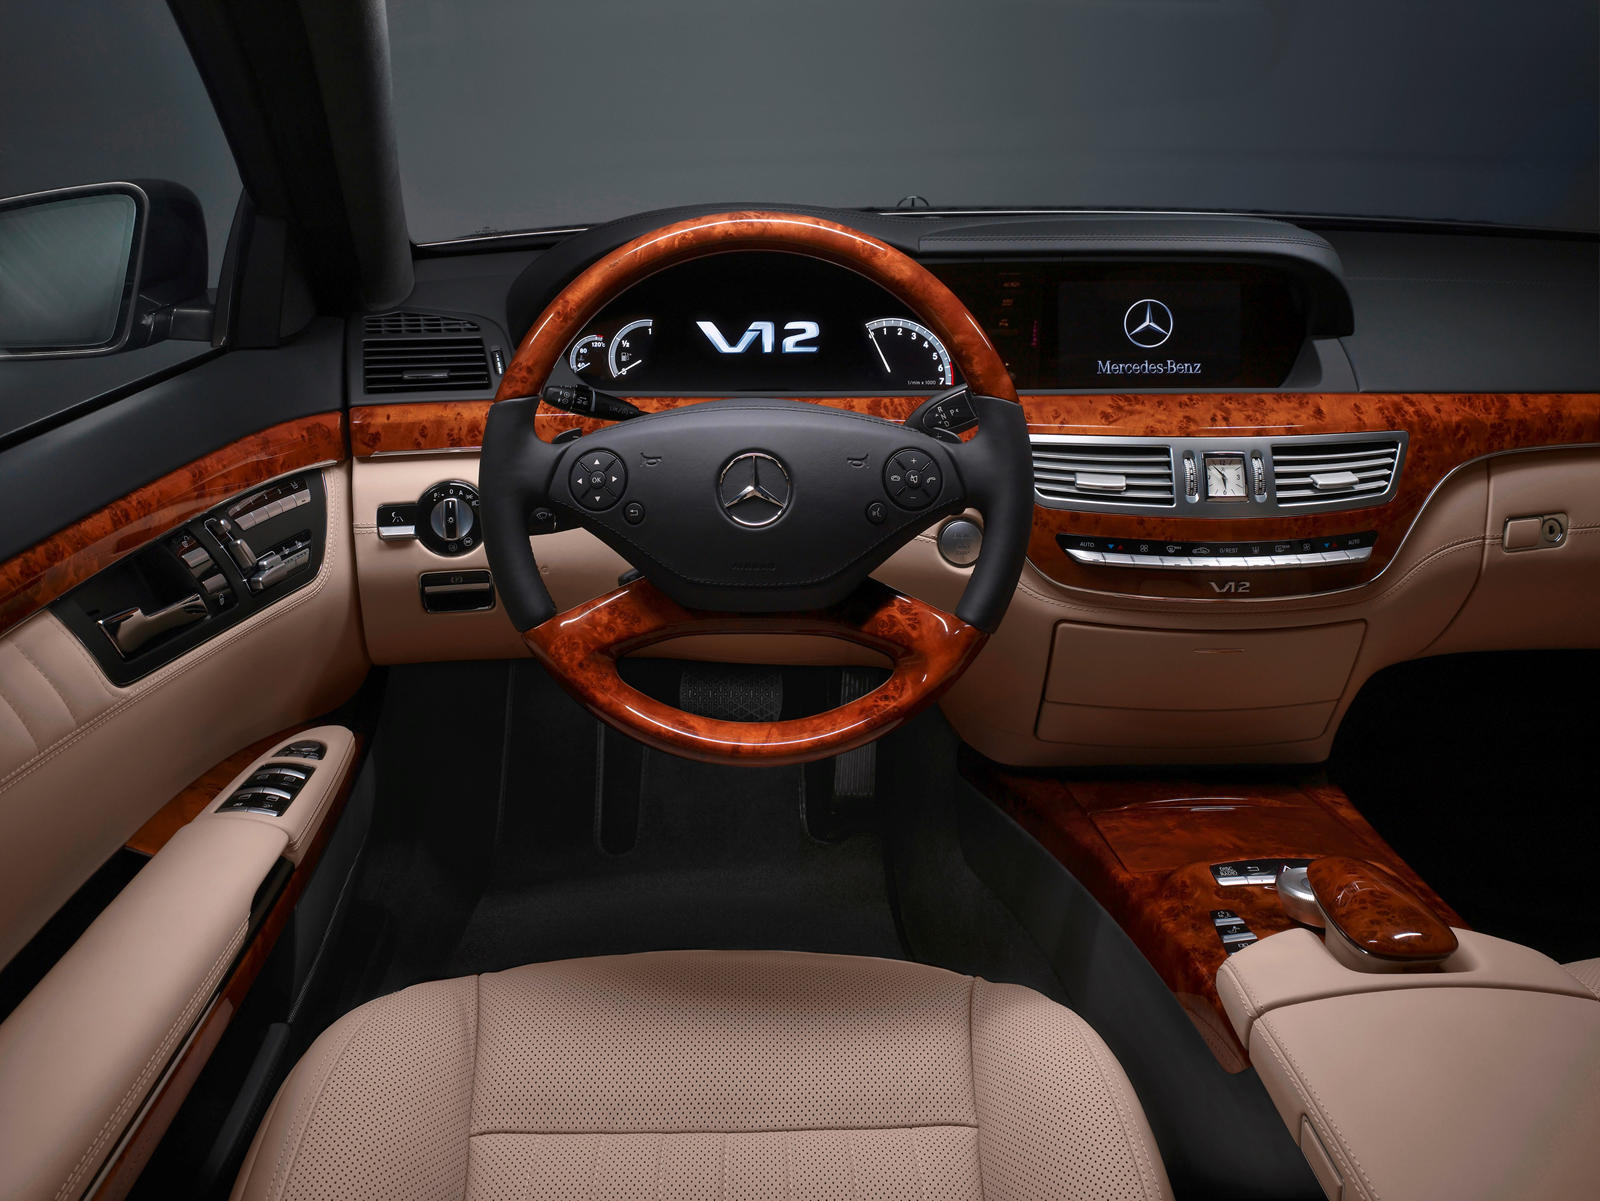 2011 Mercedes-Benz S-Class Sedan Interior Photos | CarBuzz